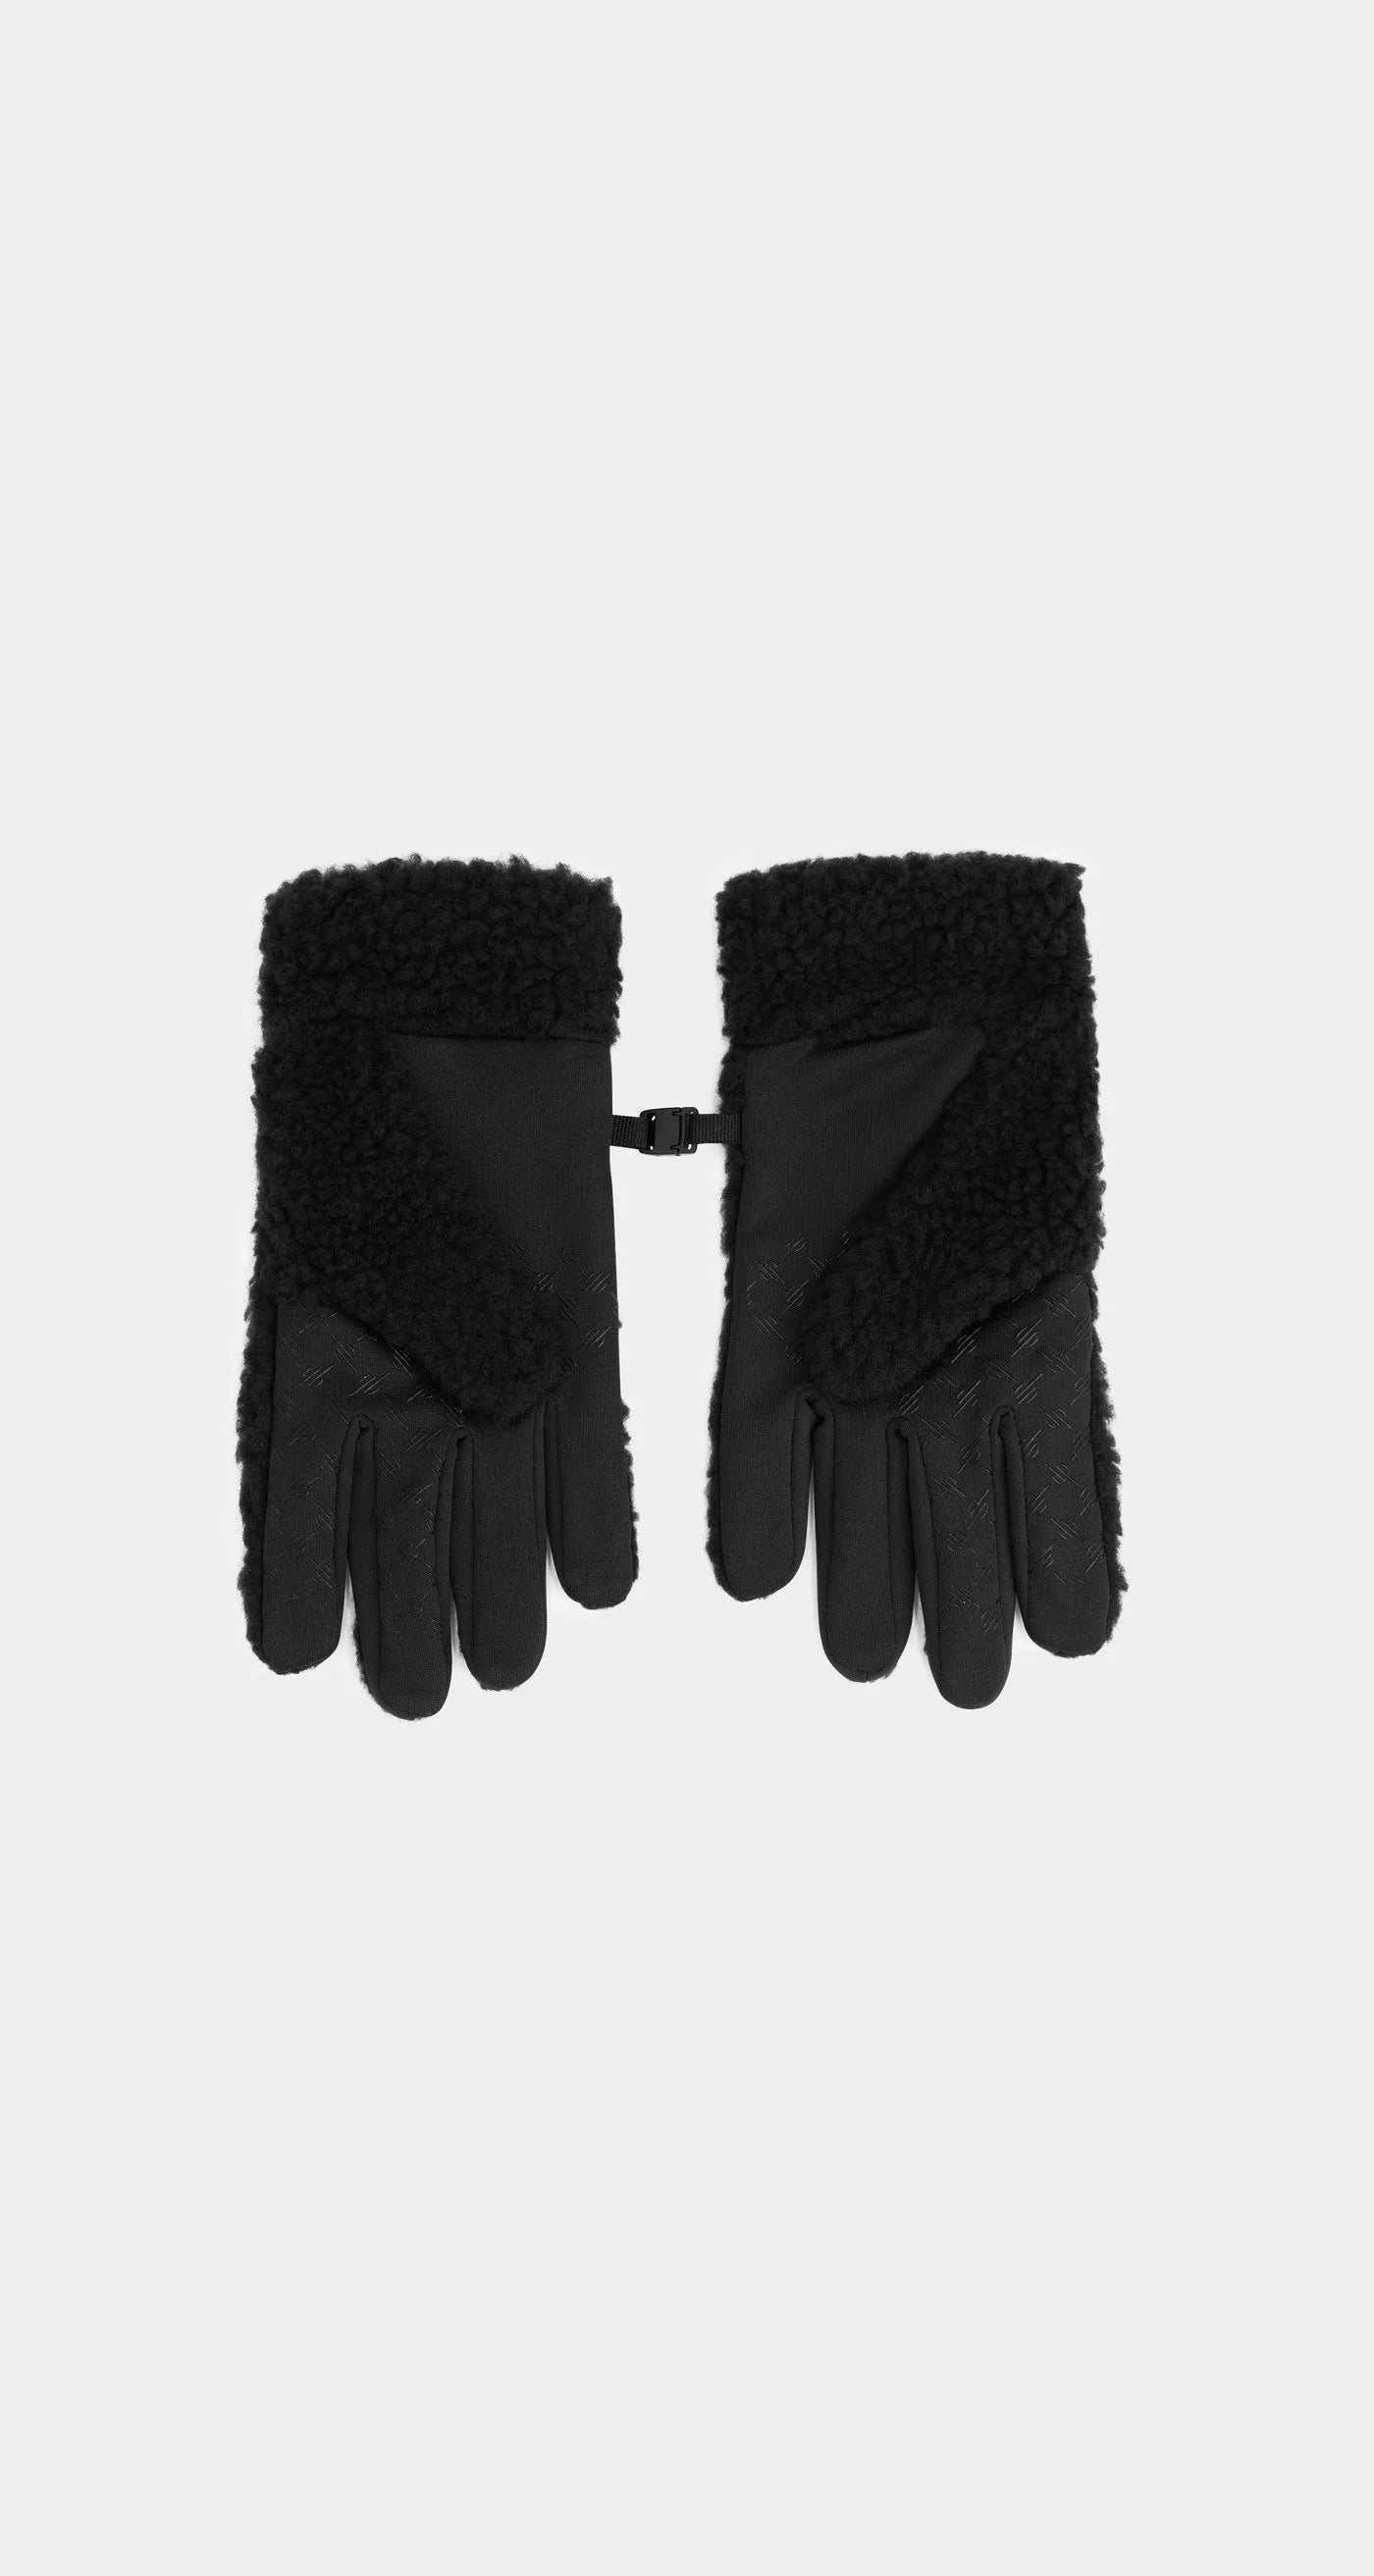 Nokem Gloves - Black